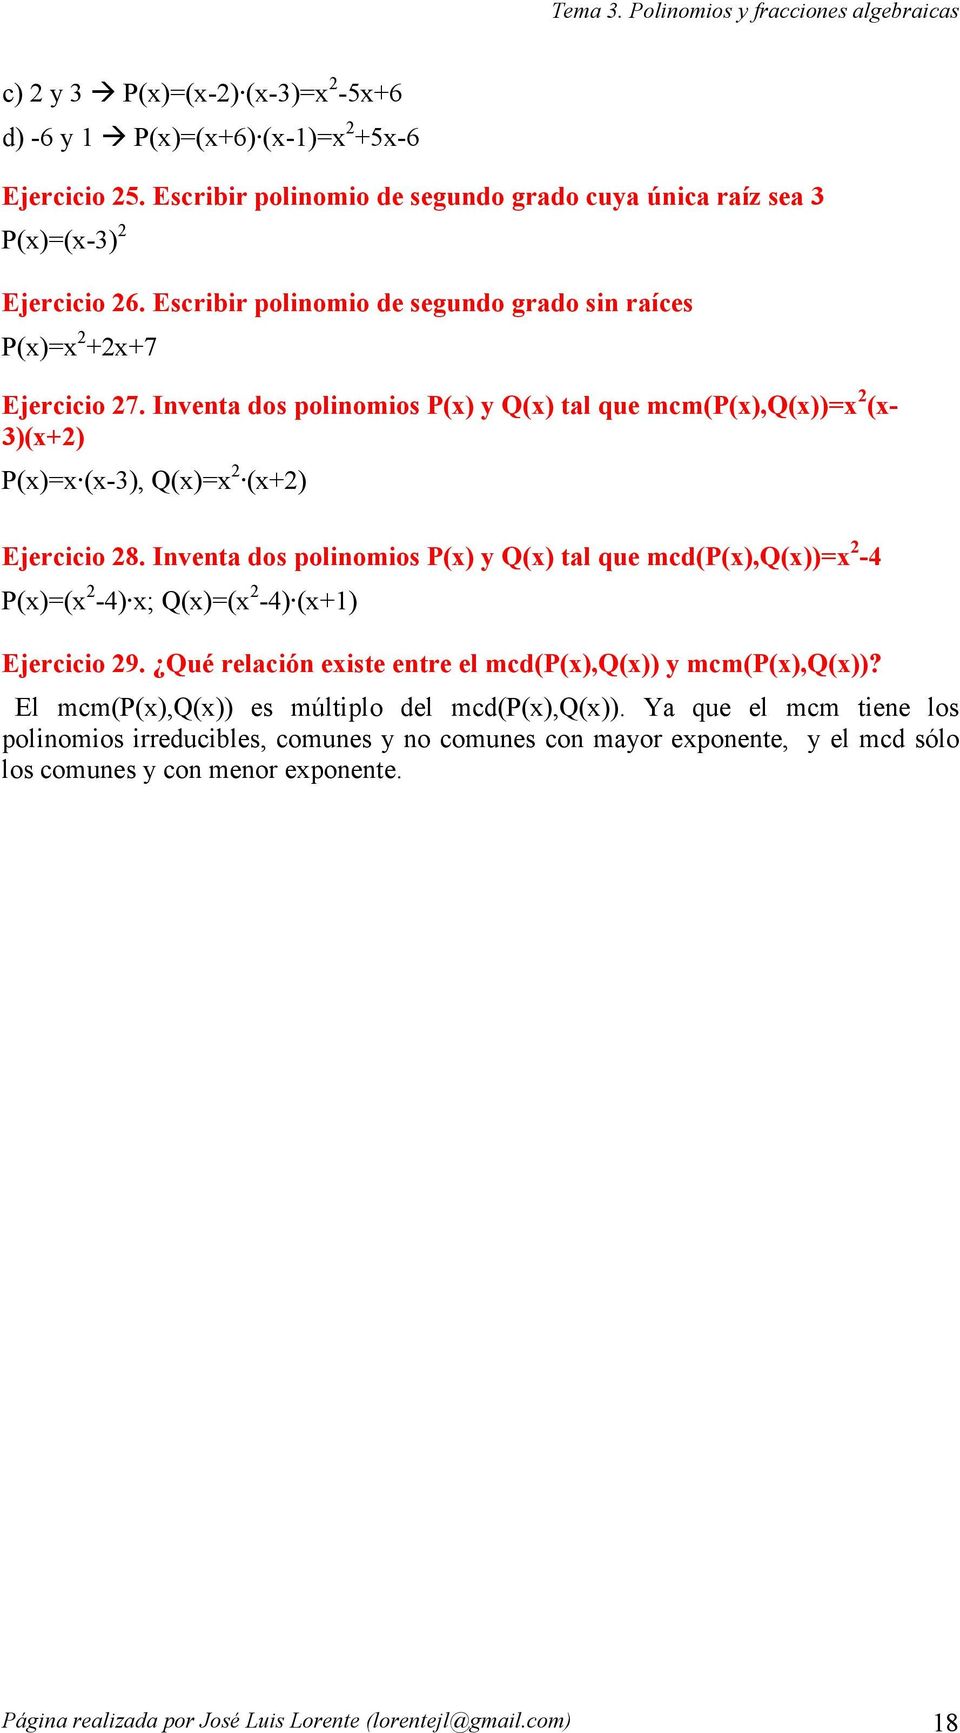 Inventa dos polinomios P) y Q) tal que mcdp),q)) - P) -) ; Q) -) ) Ejercicio 9. Qué relación eiste entre el mcdp),q)) y mcmp),q))?